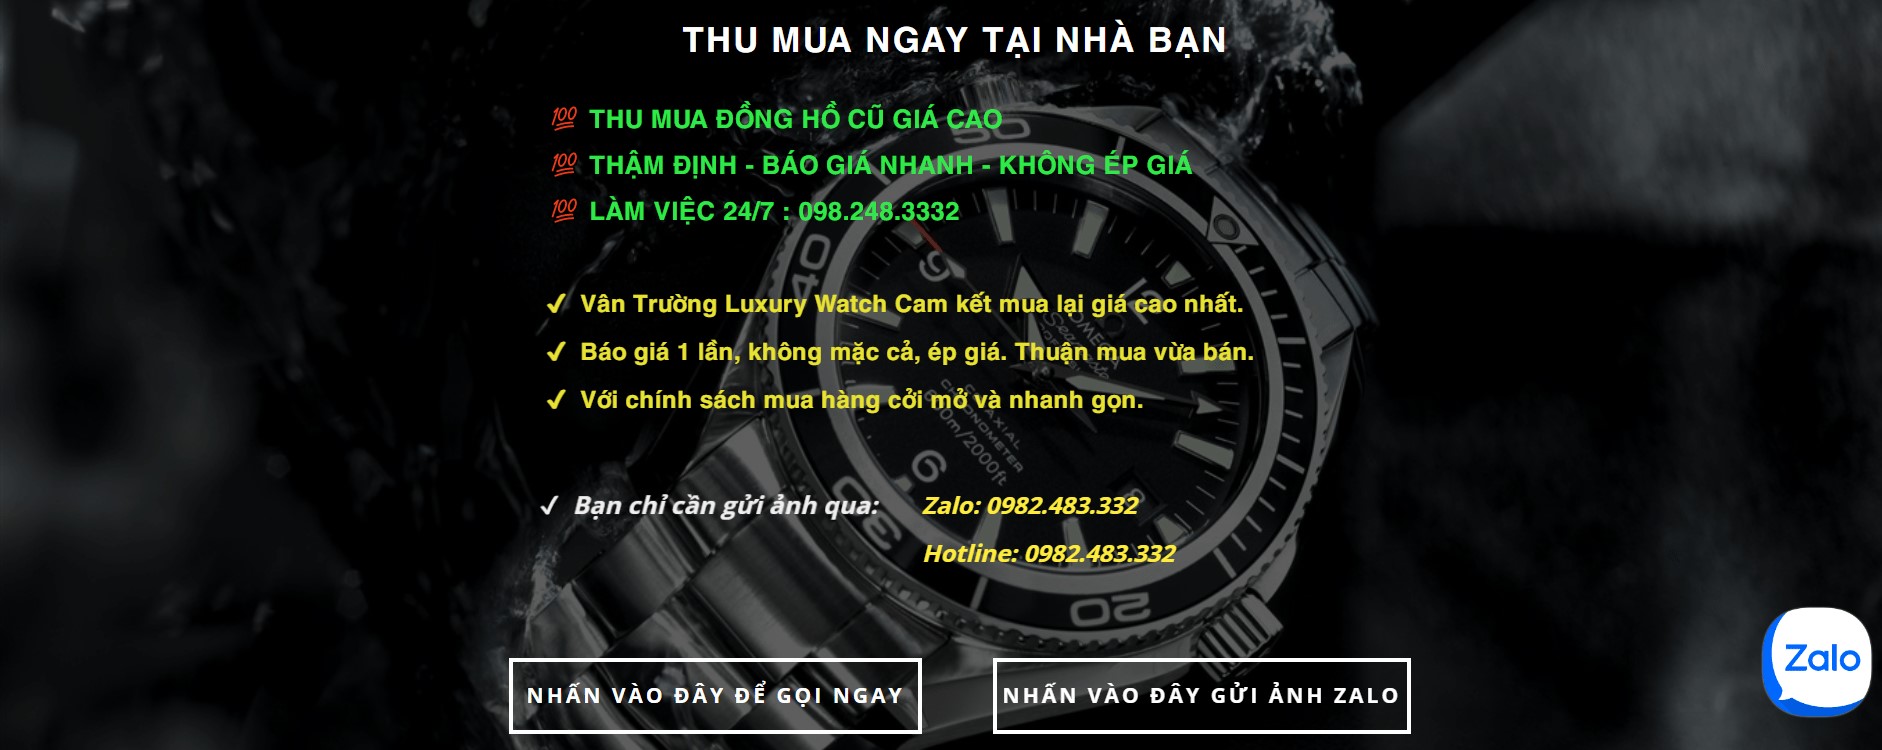 Nhật Minh Luxury Watch